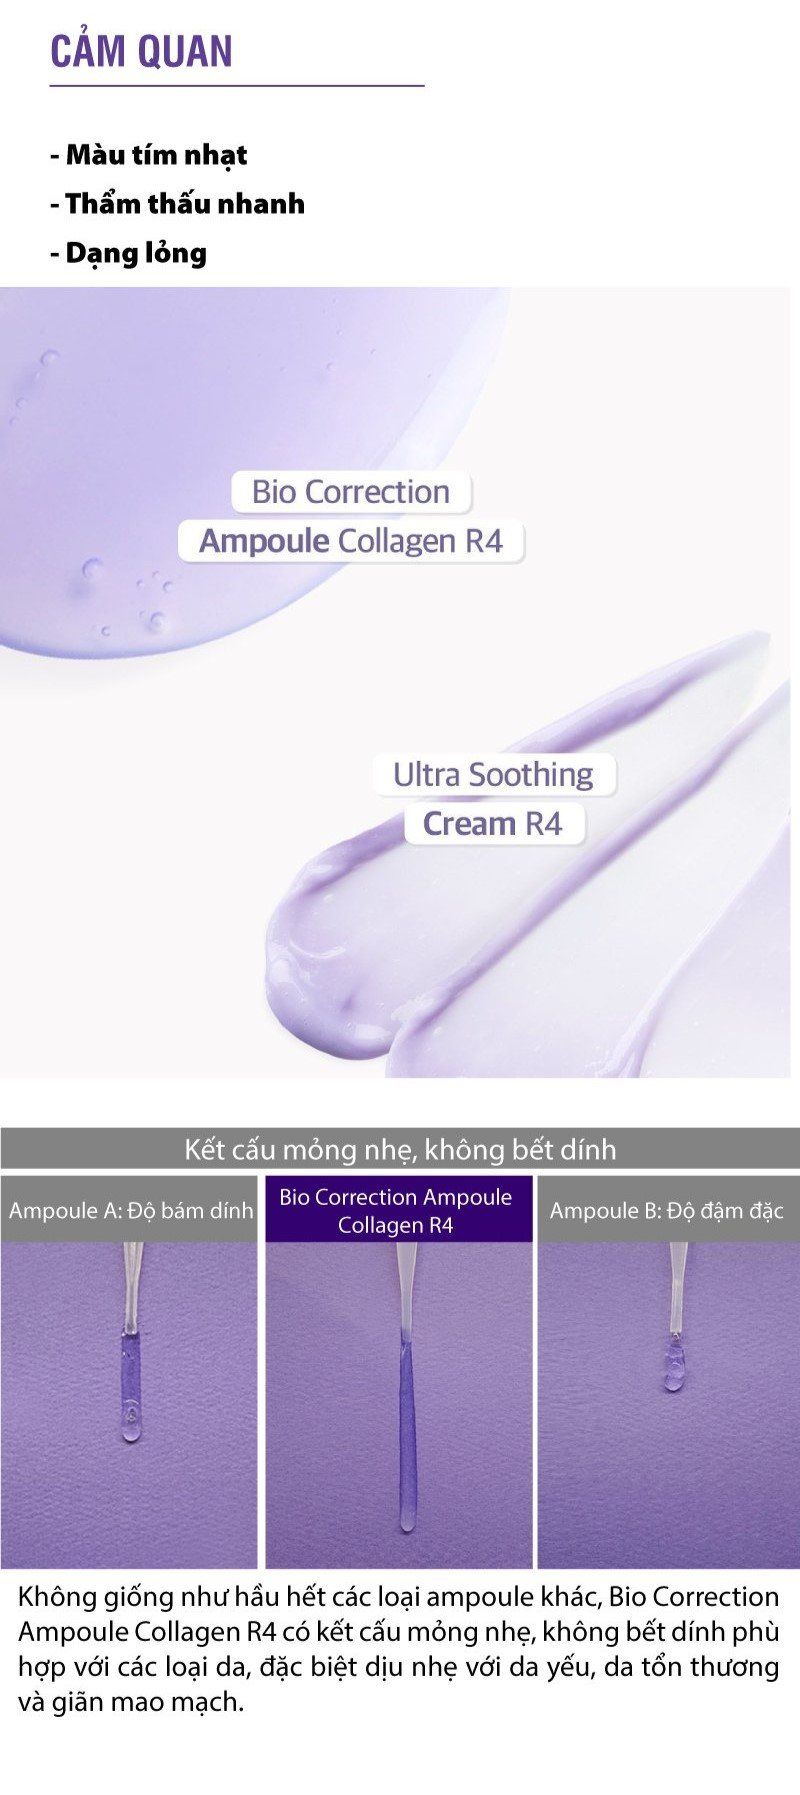  Bio Correction Ampoule Collagen R4 - Ampoule phục hồi và trẻ hóa da 